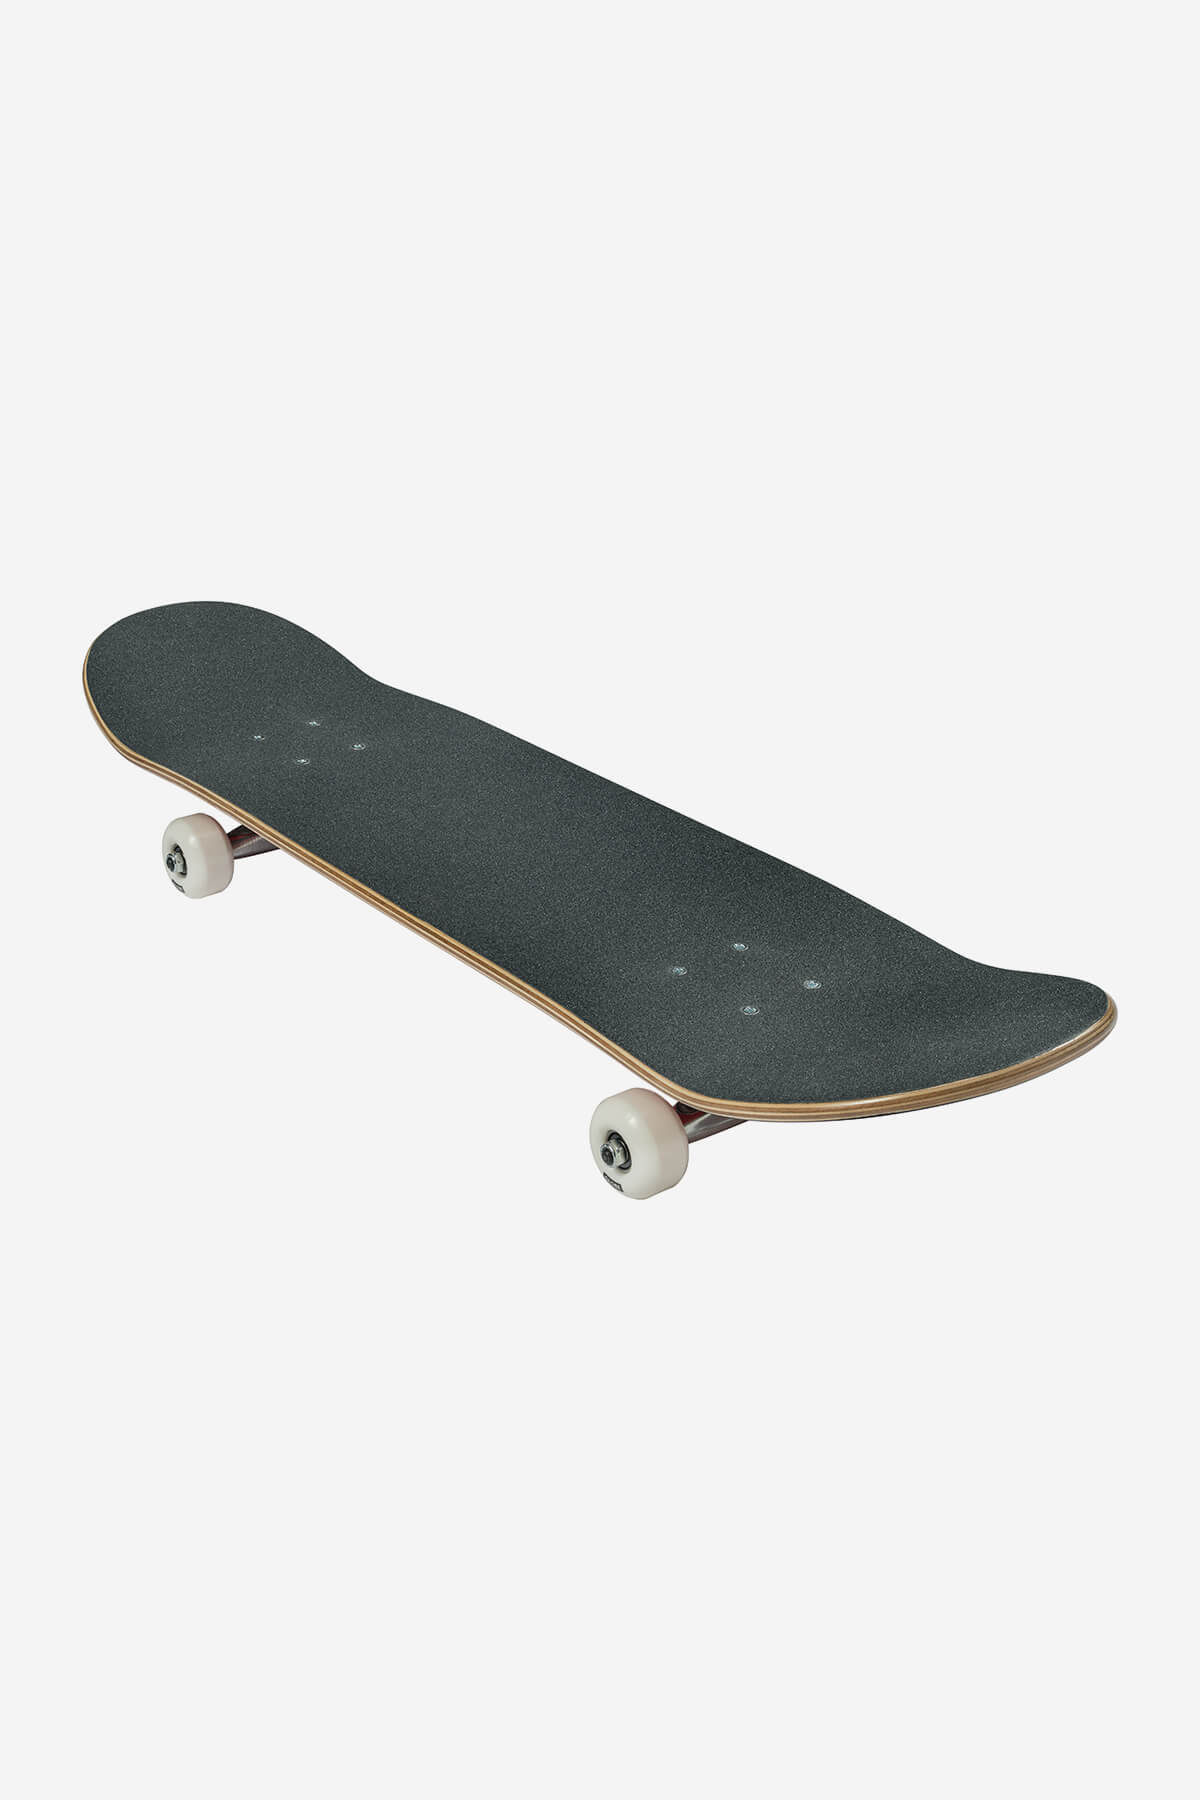 Globe - G0 Fubar - Zwart/Red - 7,75" Compleet Skateboard